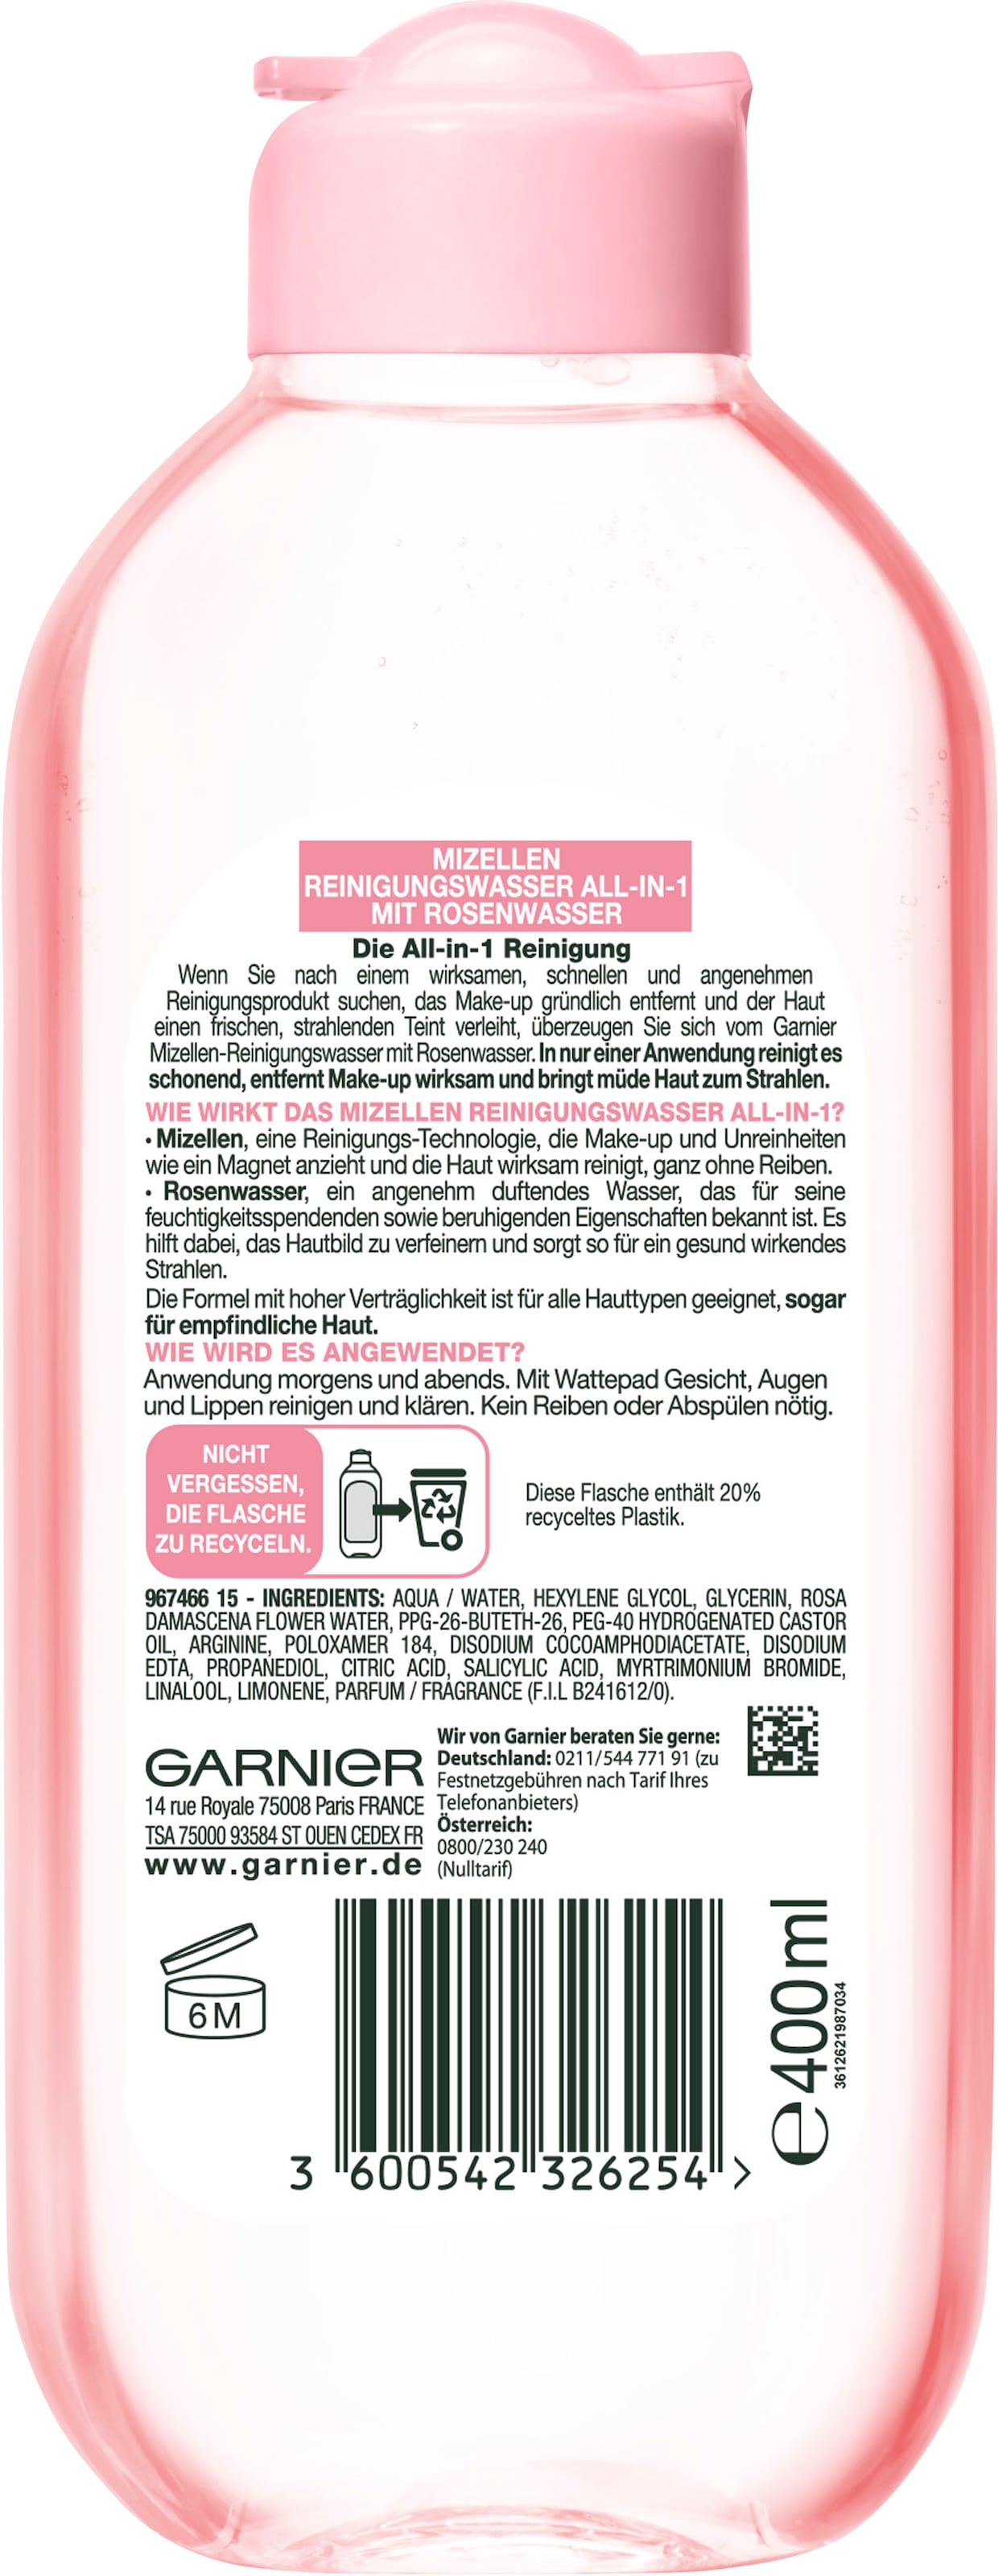 GARNIER Gesichtswasser »Mizellen mit Reinigungswasser | All-in-1«, UNIVERSAL Rosenwasser bestellen